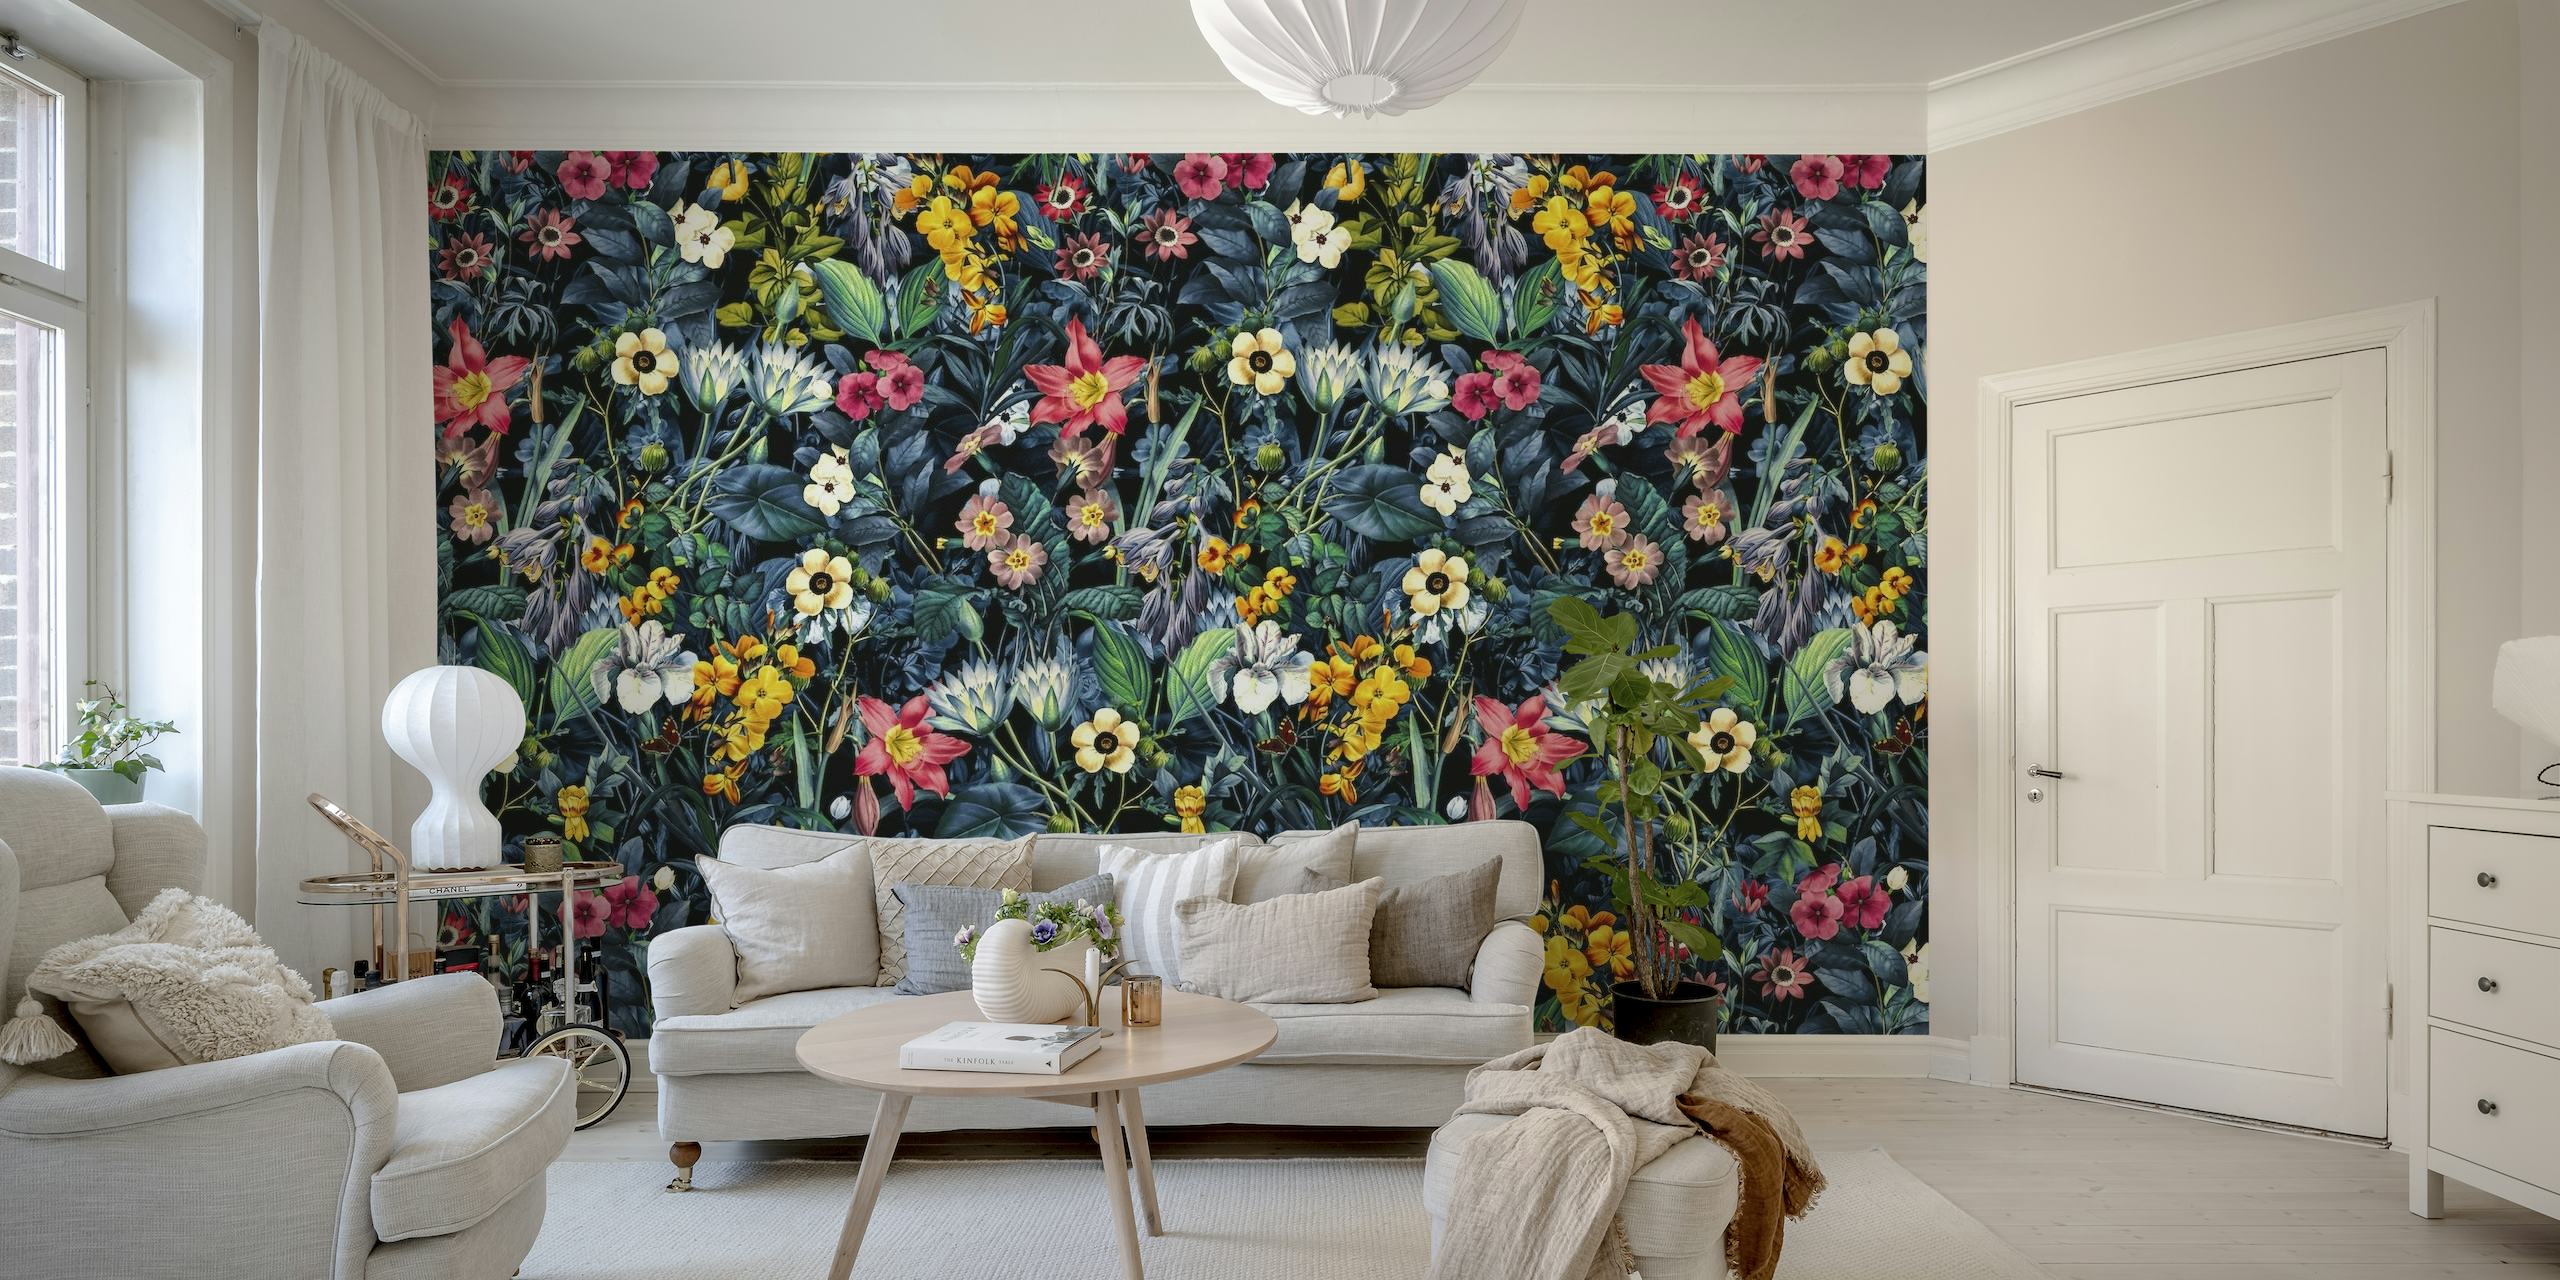 Farbenfrohes Wandbild mit exotischem Garten und verschiedenen Blumen und üppigem Blattwerk